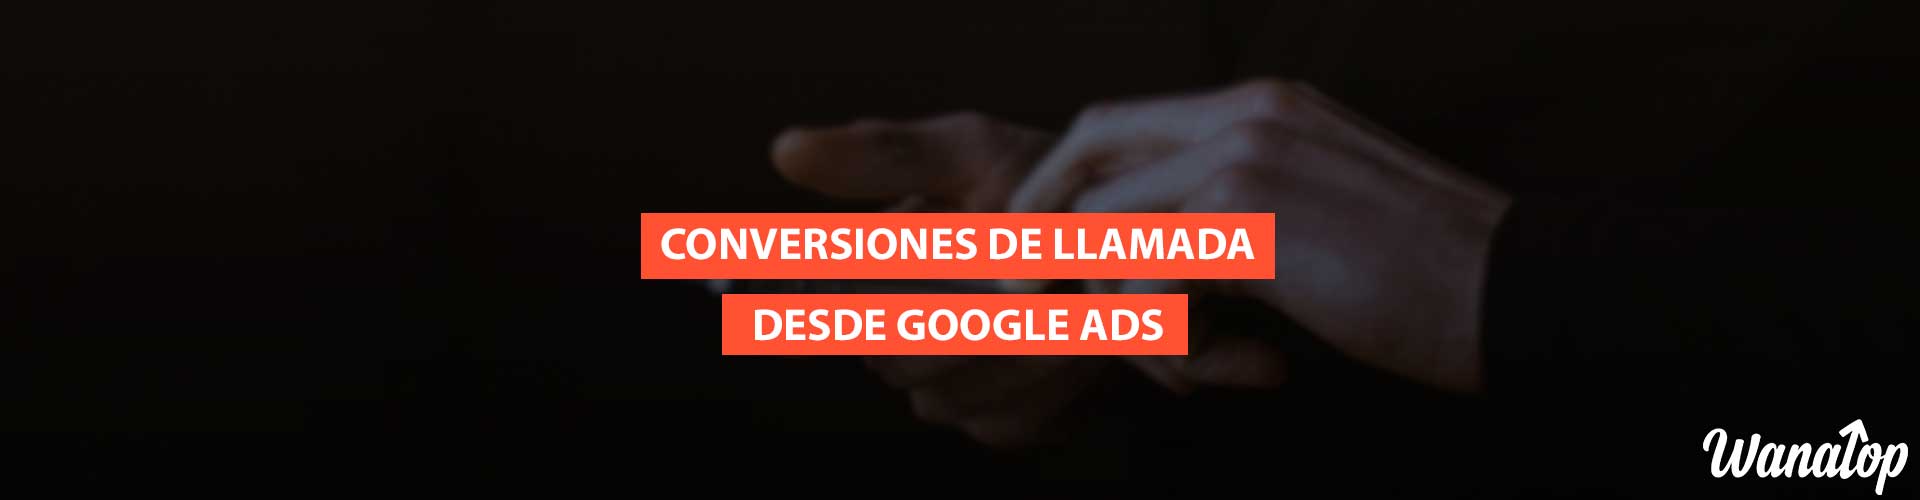 conversiones llamada google ads Conversiones de llamada desde anuncios de Google Ads: Tipos, seguimiento y configuración